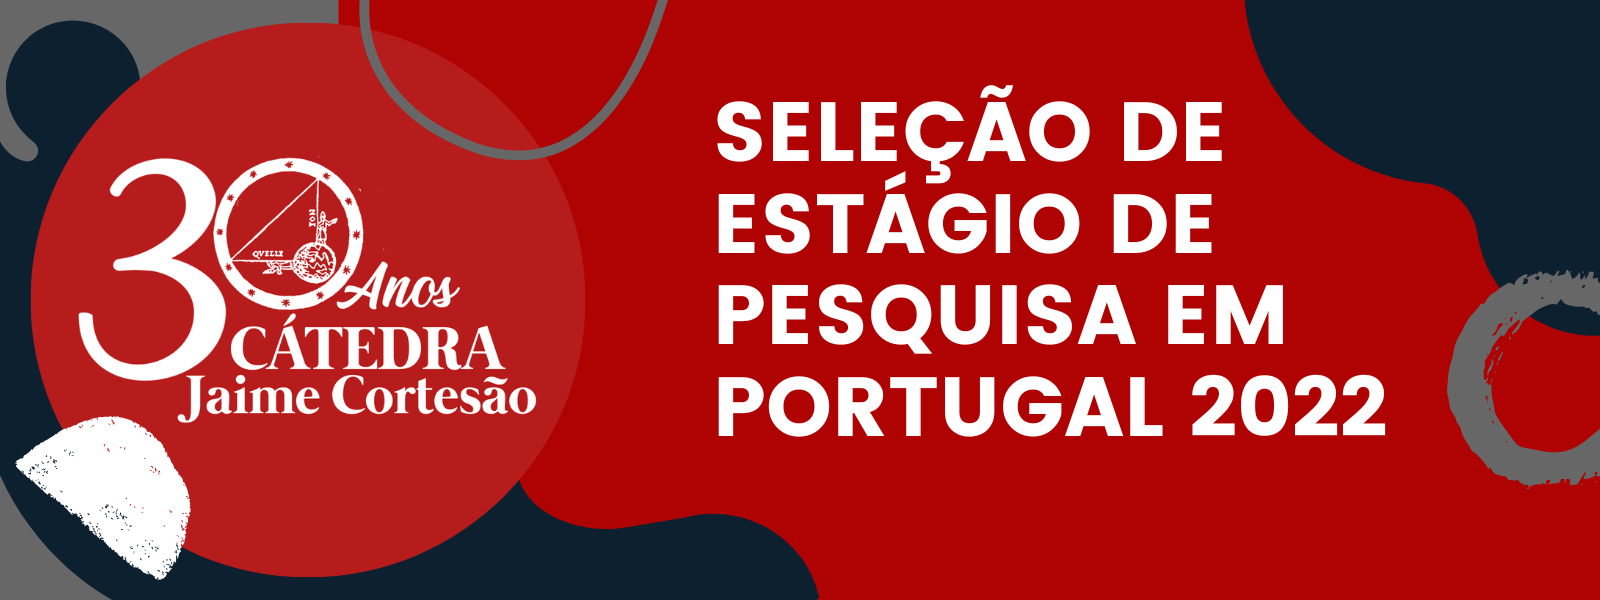 SELEÇÃO DE ESTÁGIO DE PESQUISA EM PORTUGAL 2022.png